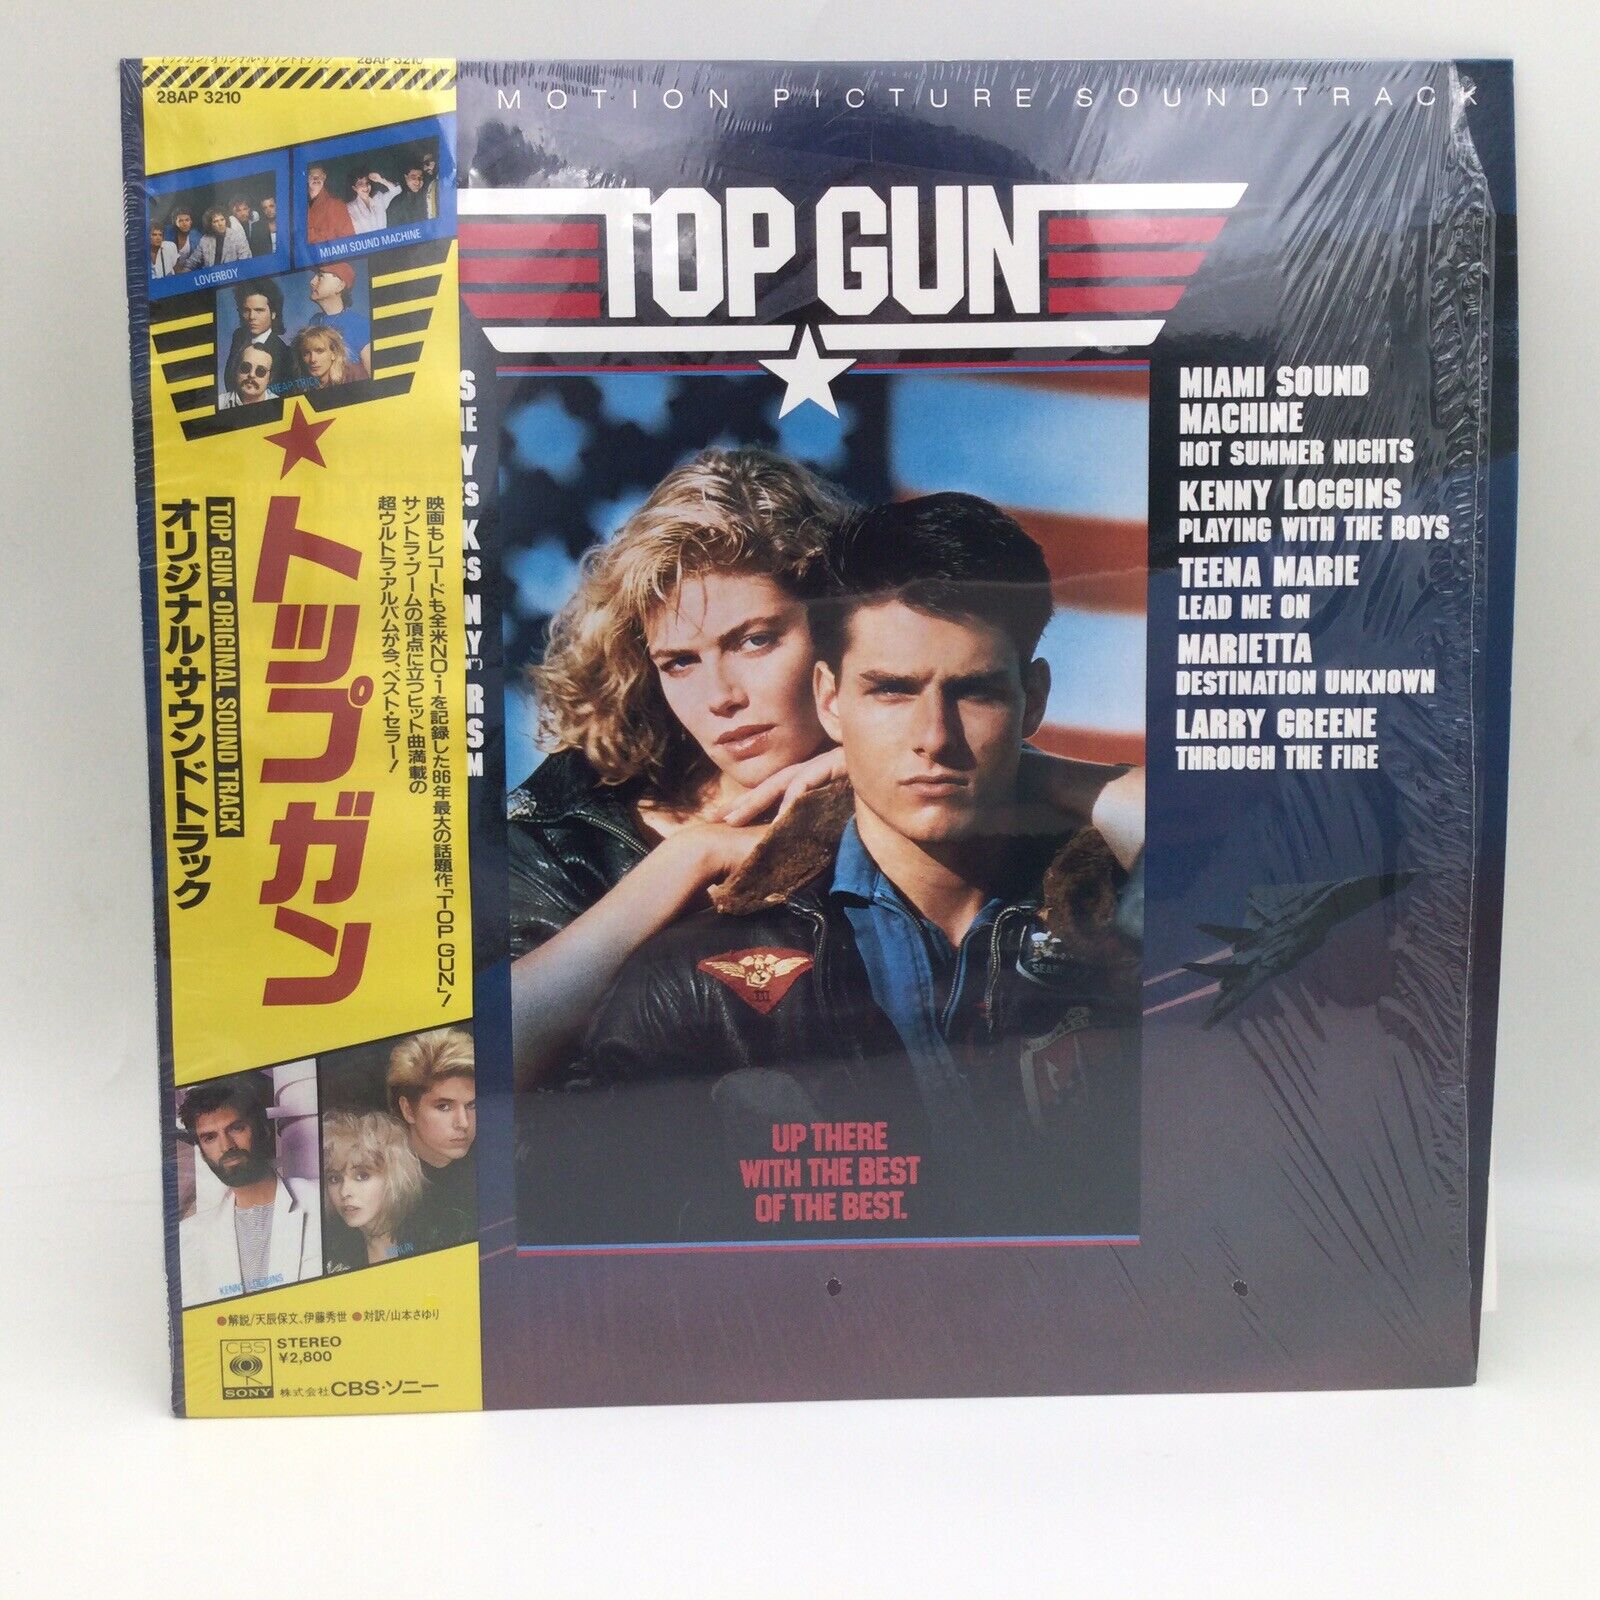 TOP GUN Soundtrack KENNY LOGGINS CHEAP TRICK CBS SONY 28AP 3210 OBI Japan LP